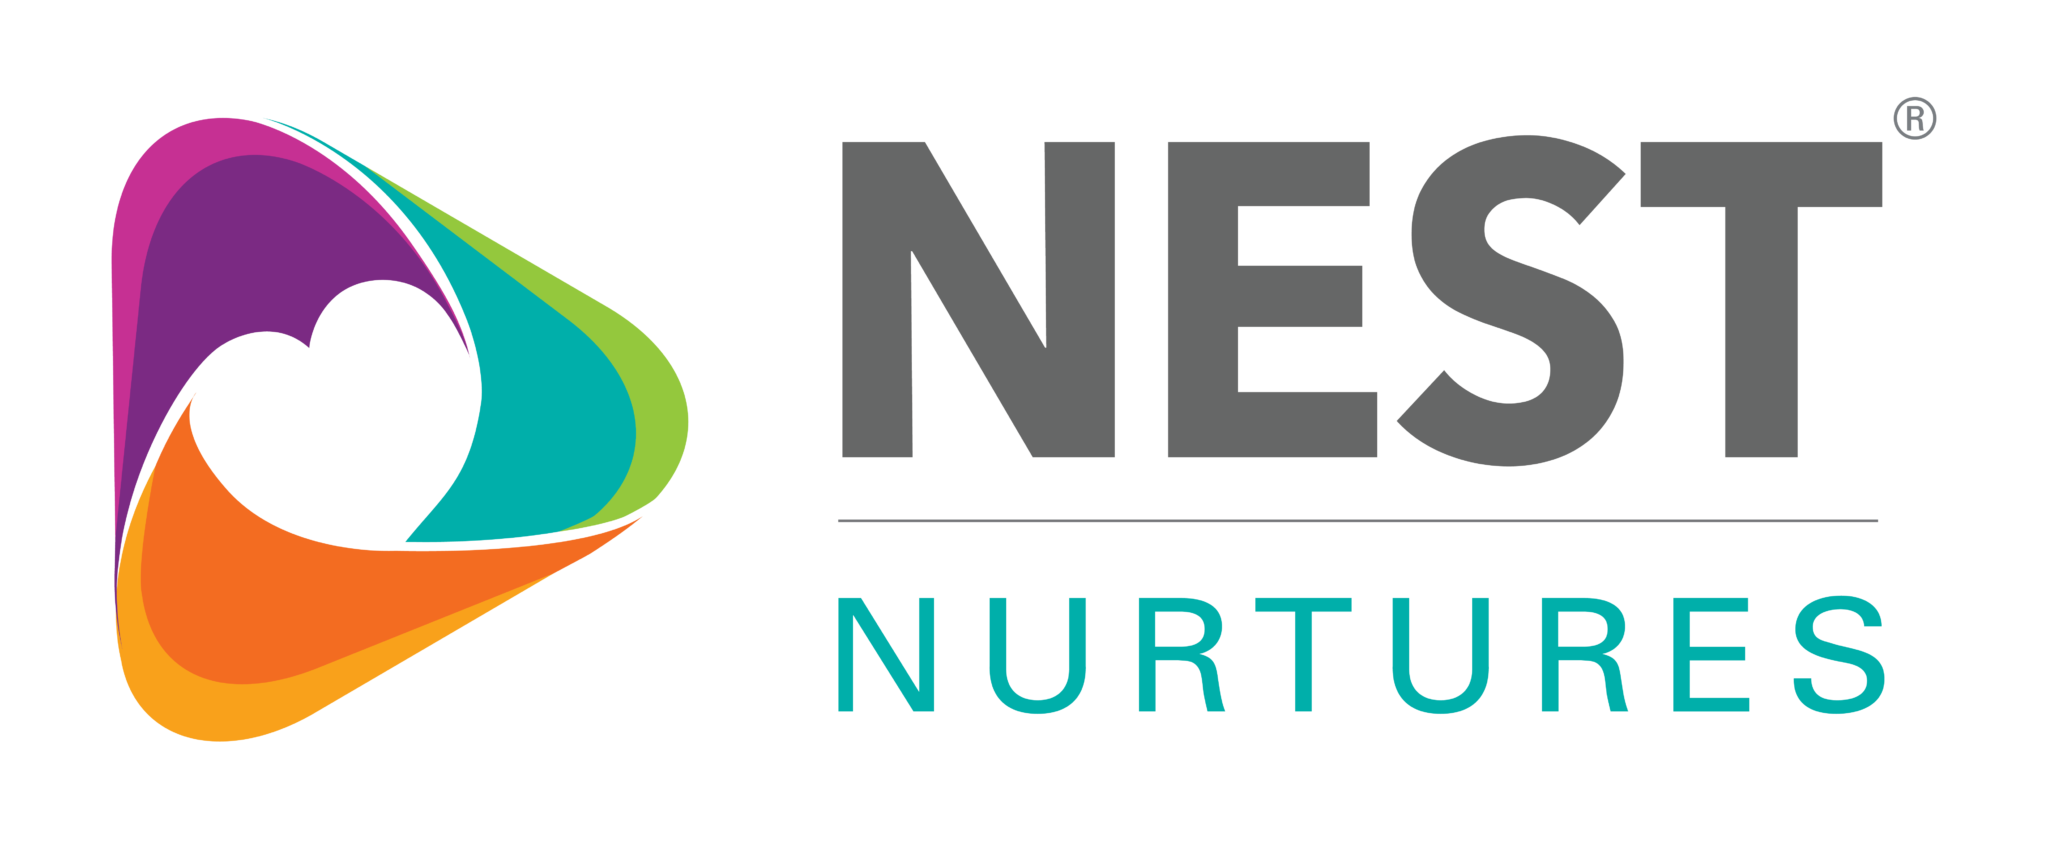 NEST_Nurtures